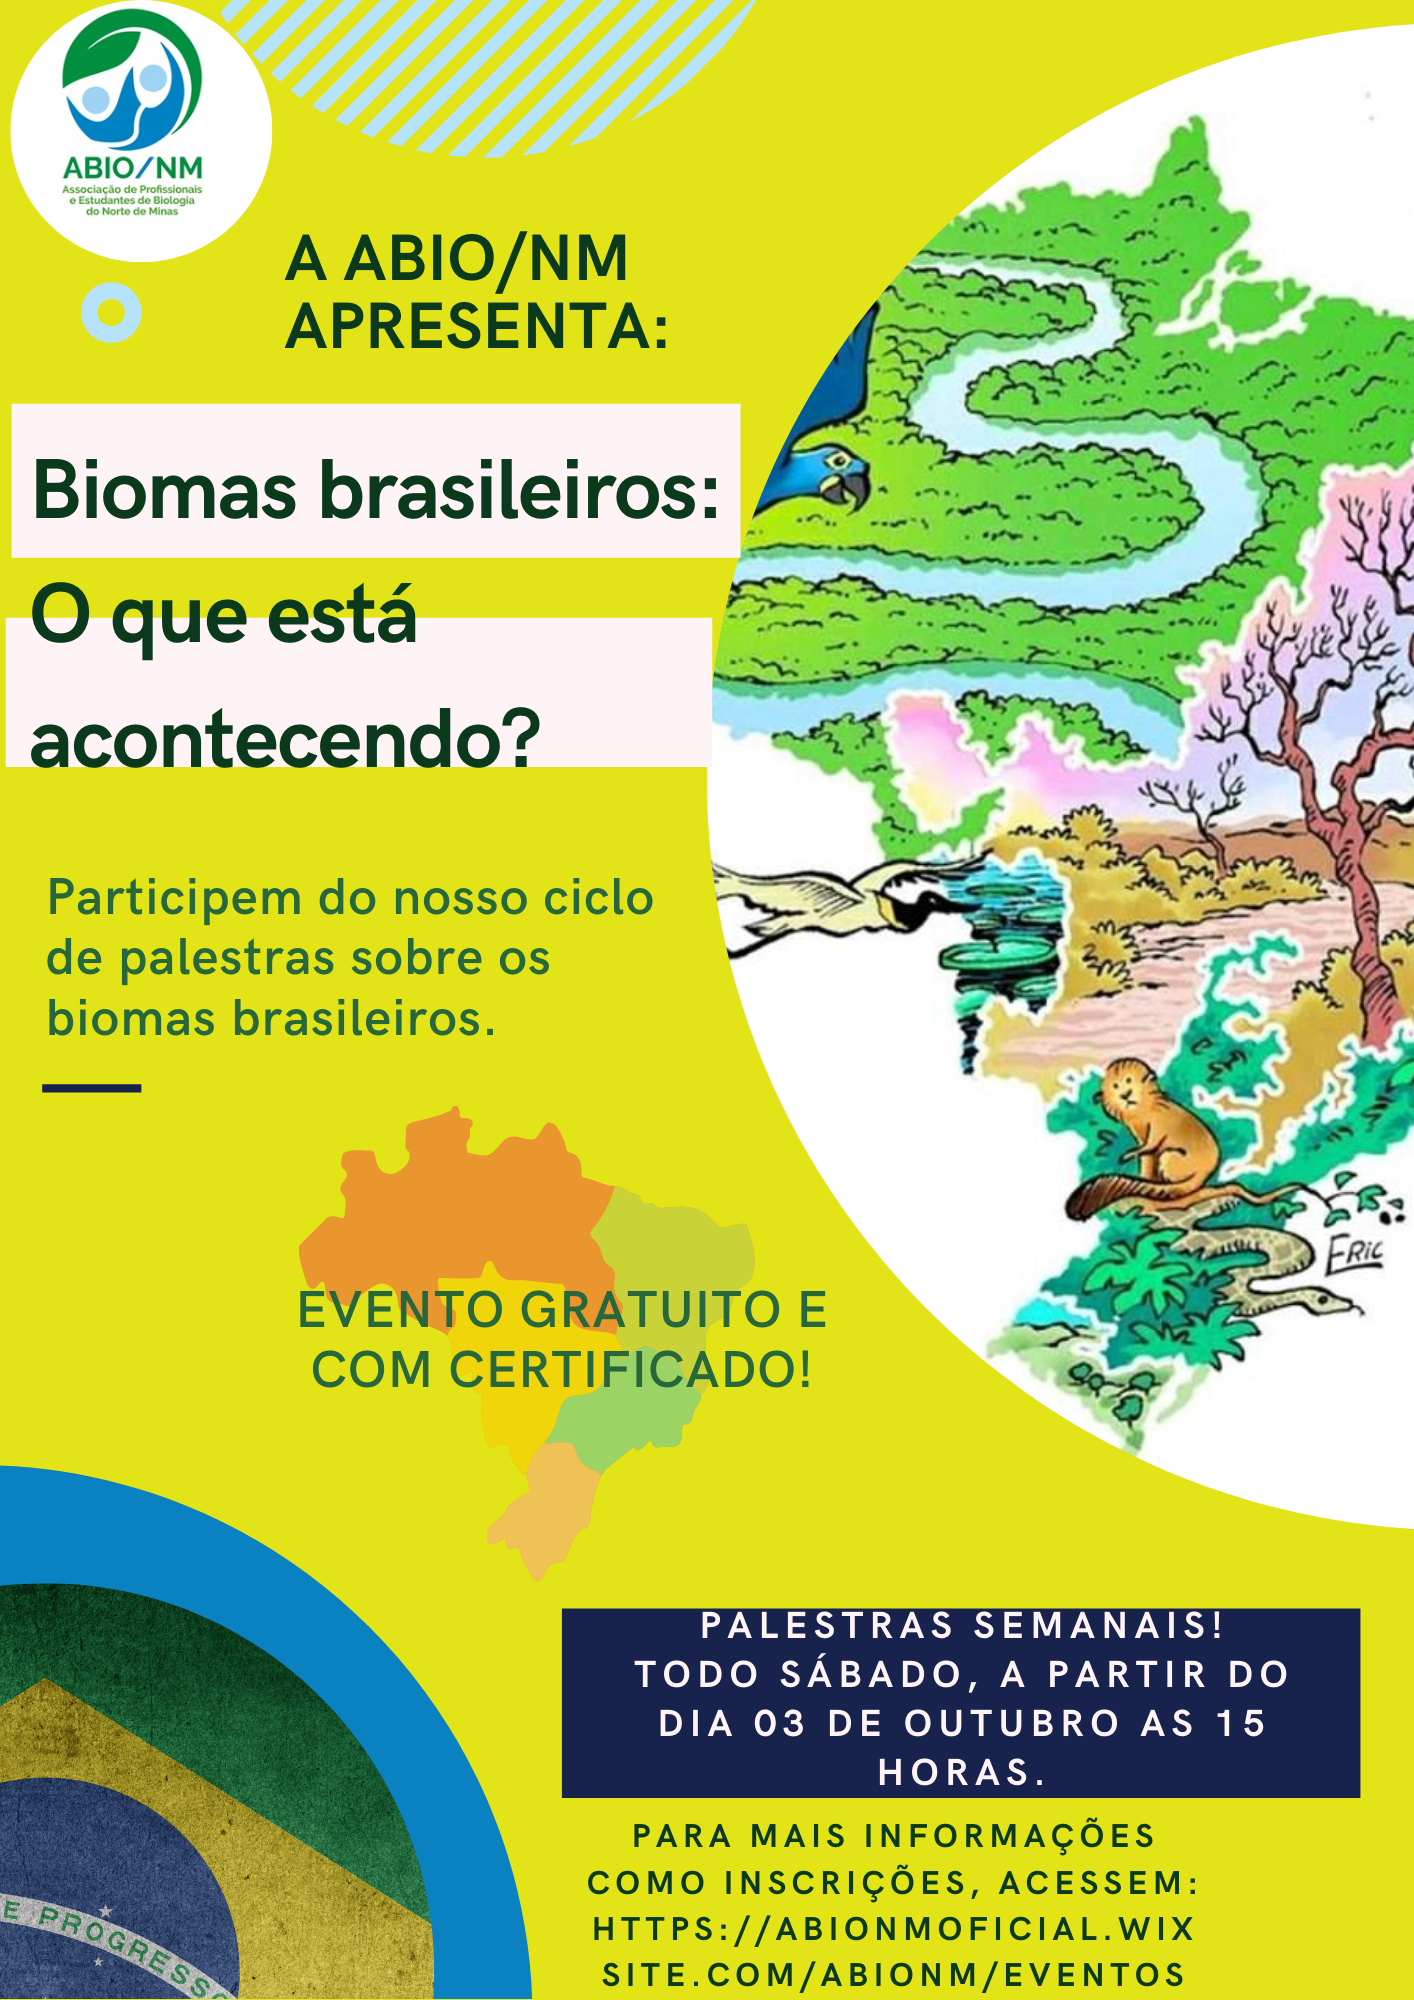 Biomas brasileiros: O que está acontecendo?